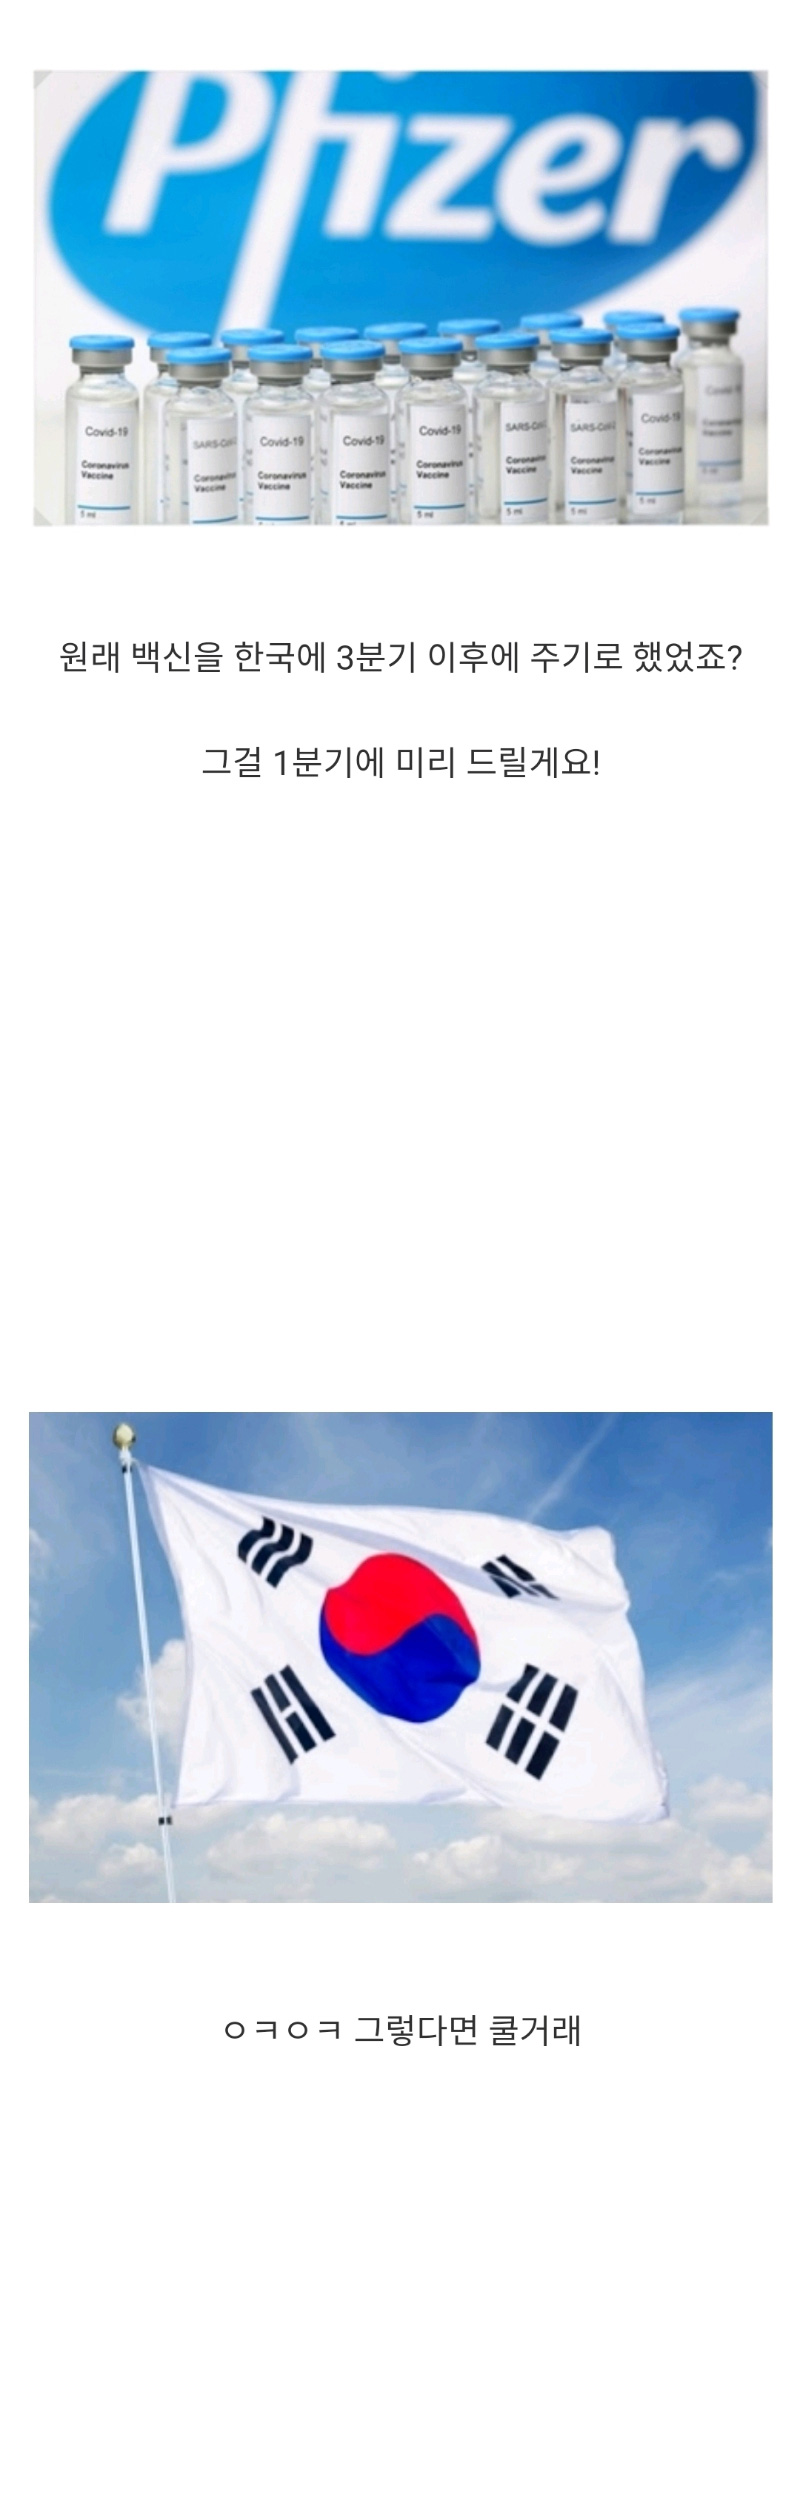 한국의 주사기 확보 대작전 - 꾸르